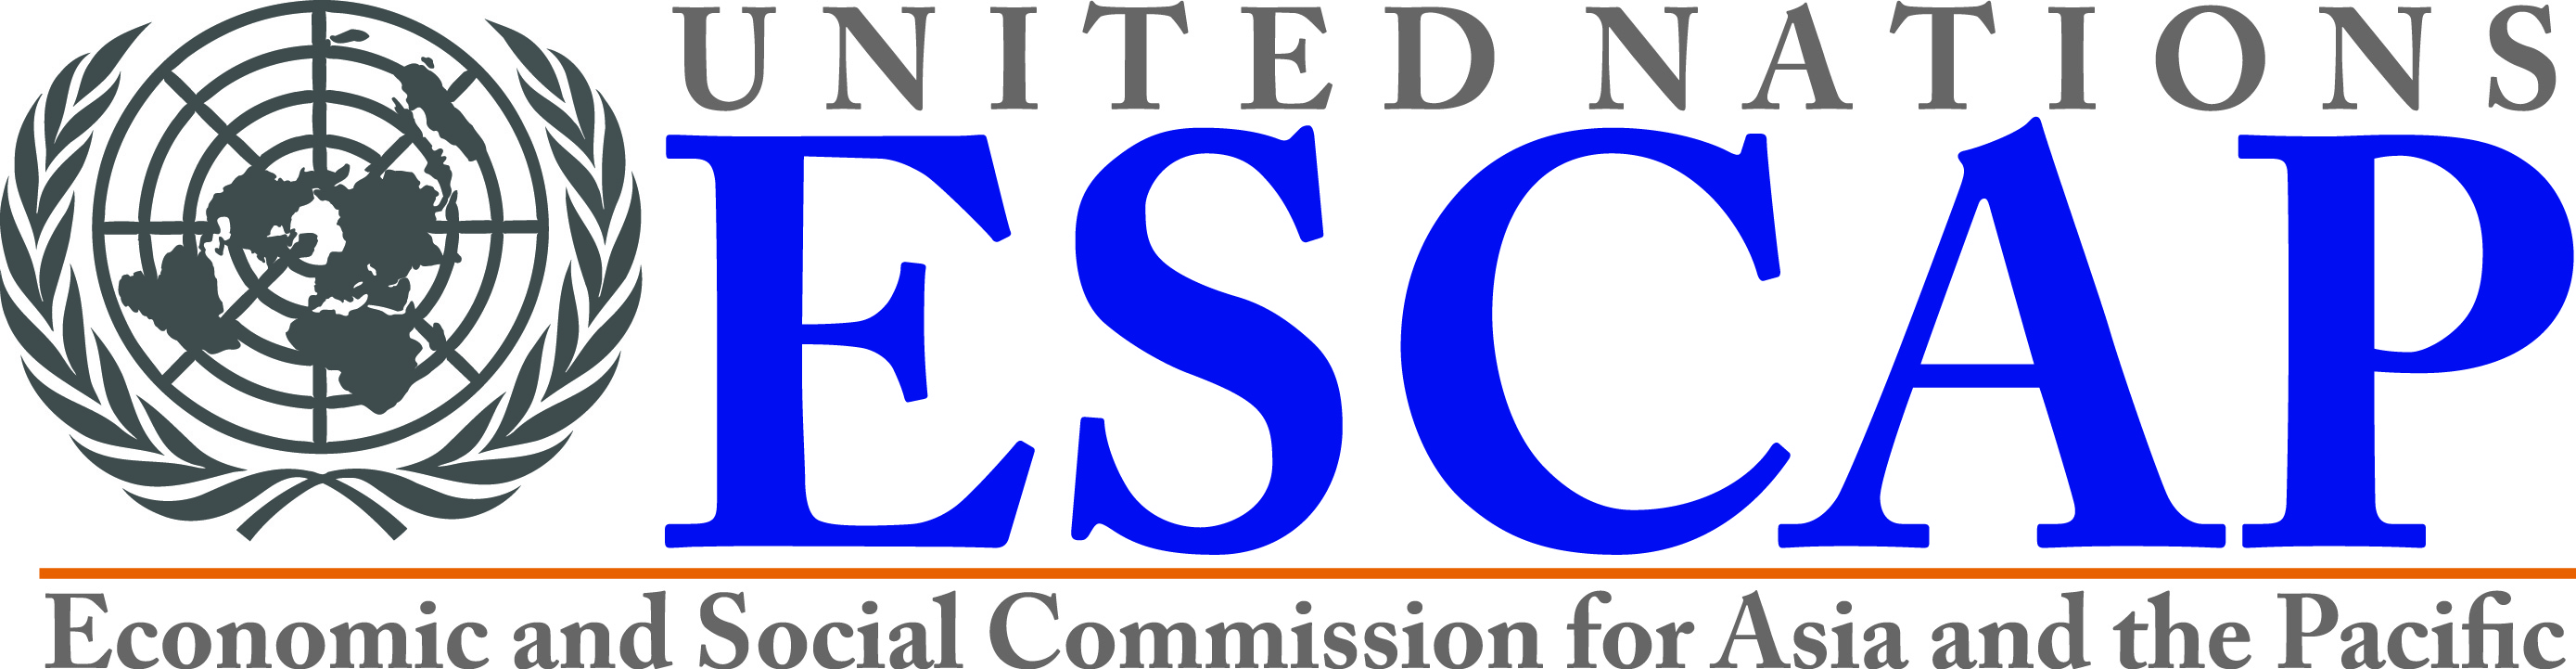 UNESCAP logo.